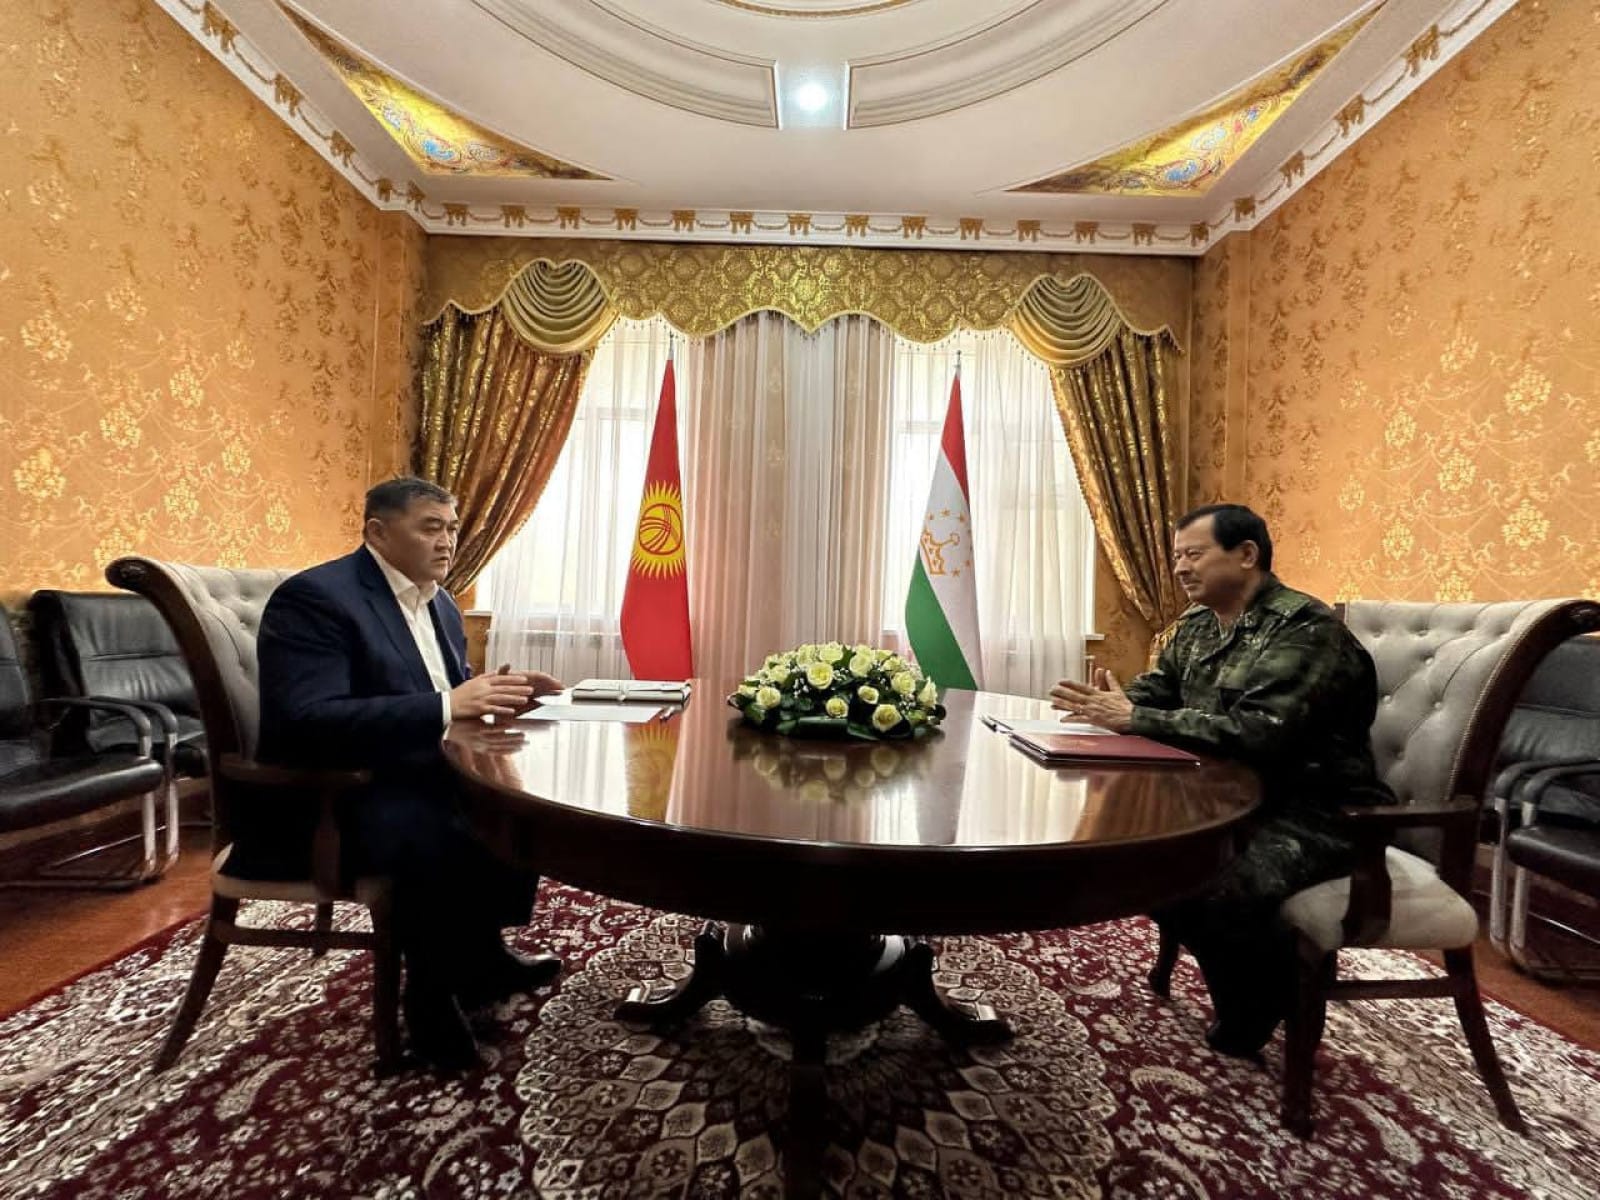 Кыргызстан и Таджикистан достигли понимания по двум ключевым вопросам госграницы